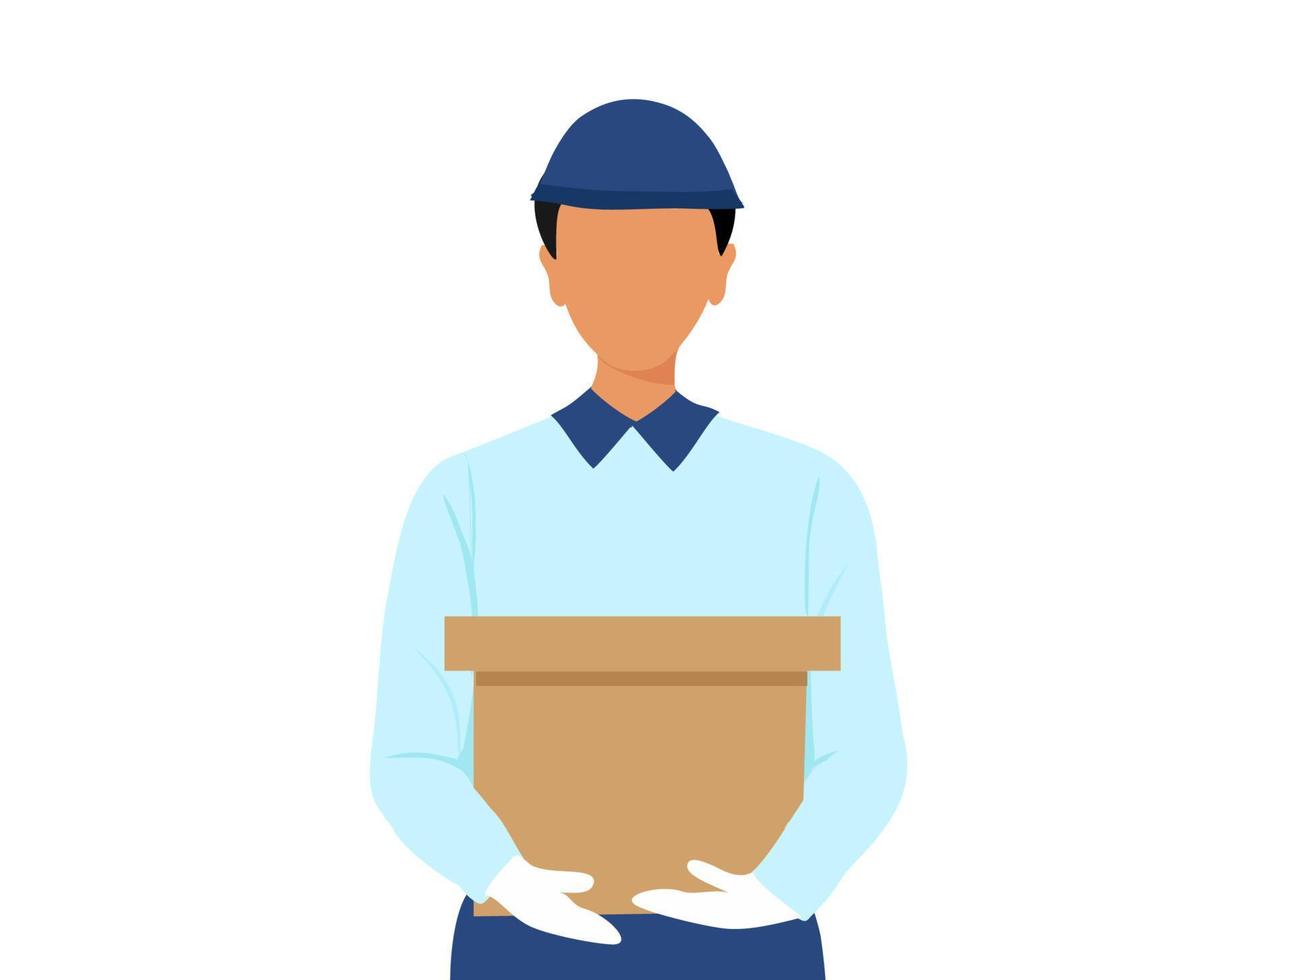 livraison d'un jeune homme tenant une boîte de messagerie pour livrer à l'illustration vectorielle client. service de livraison et concept d'achat en ligne vecteur